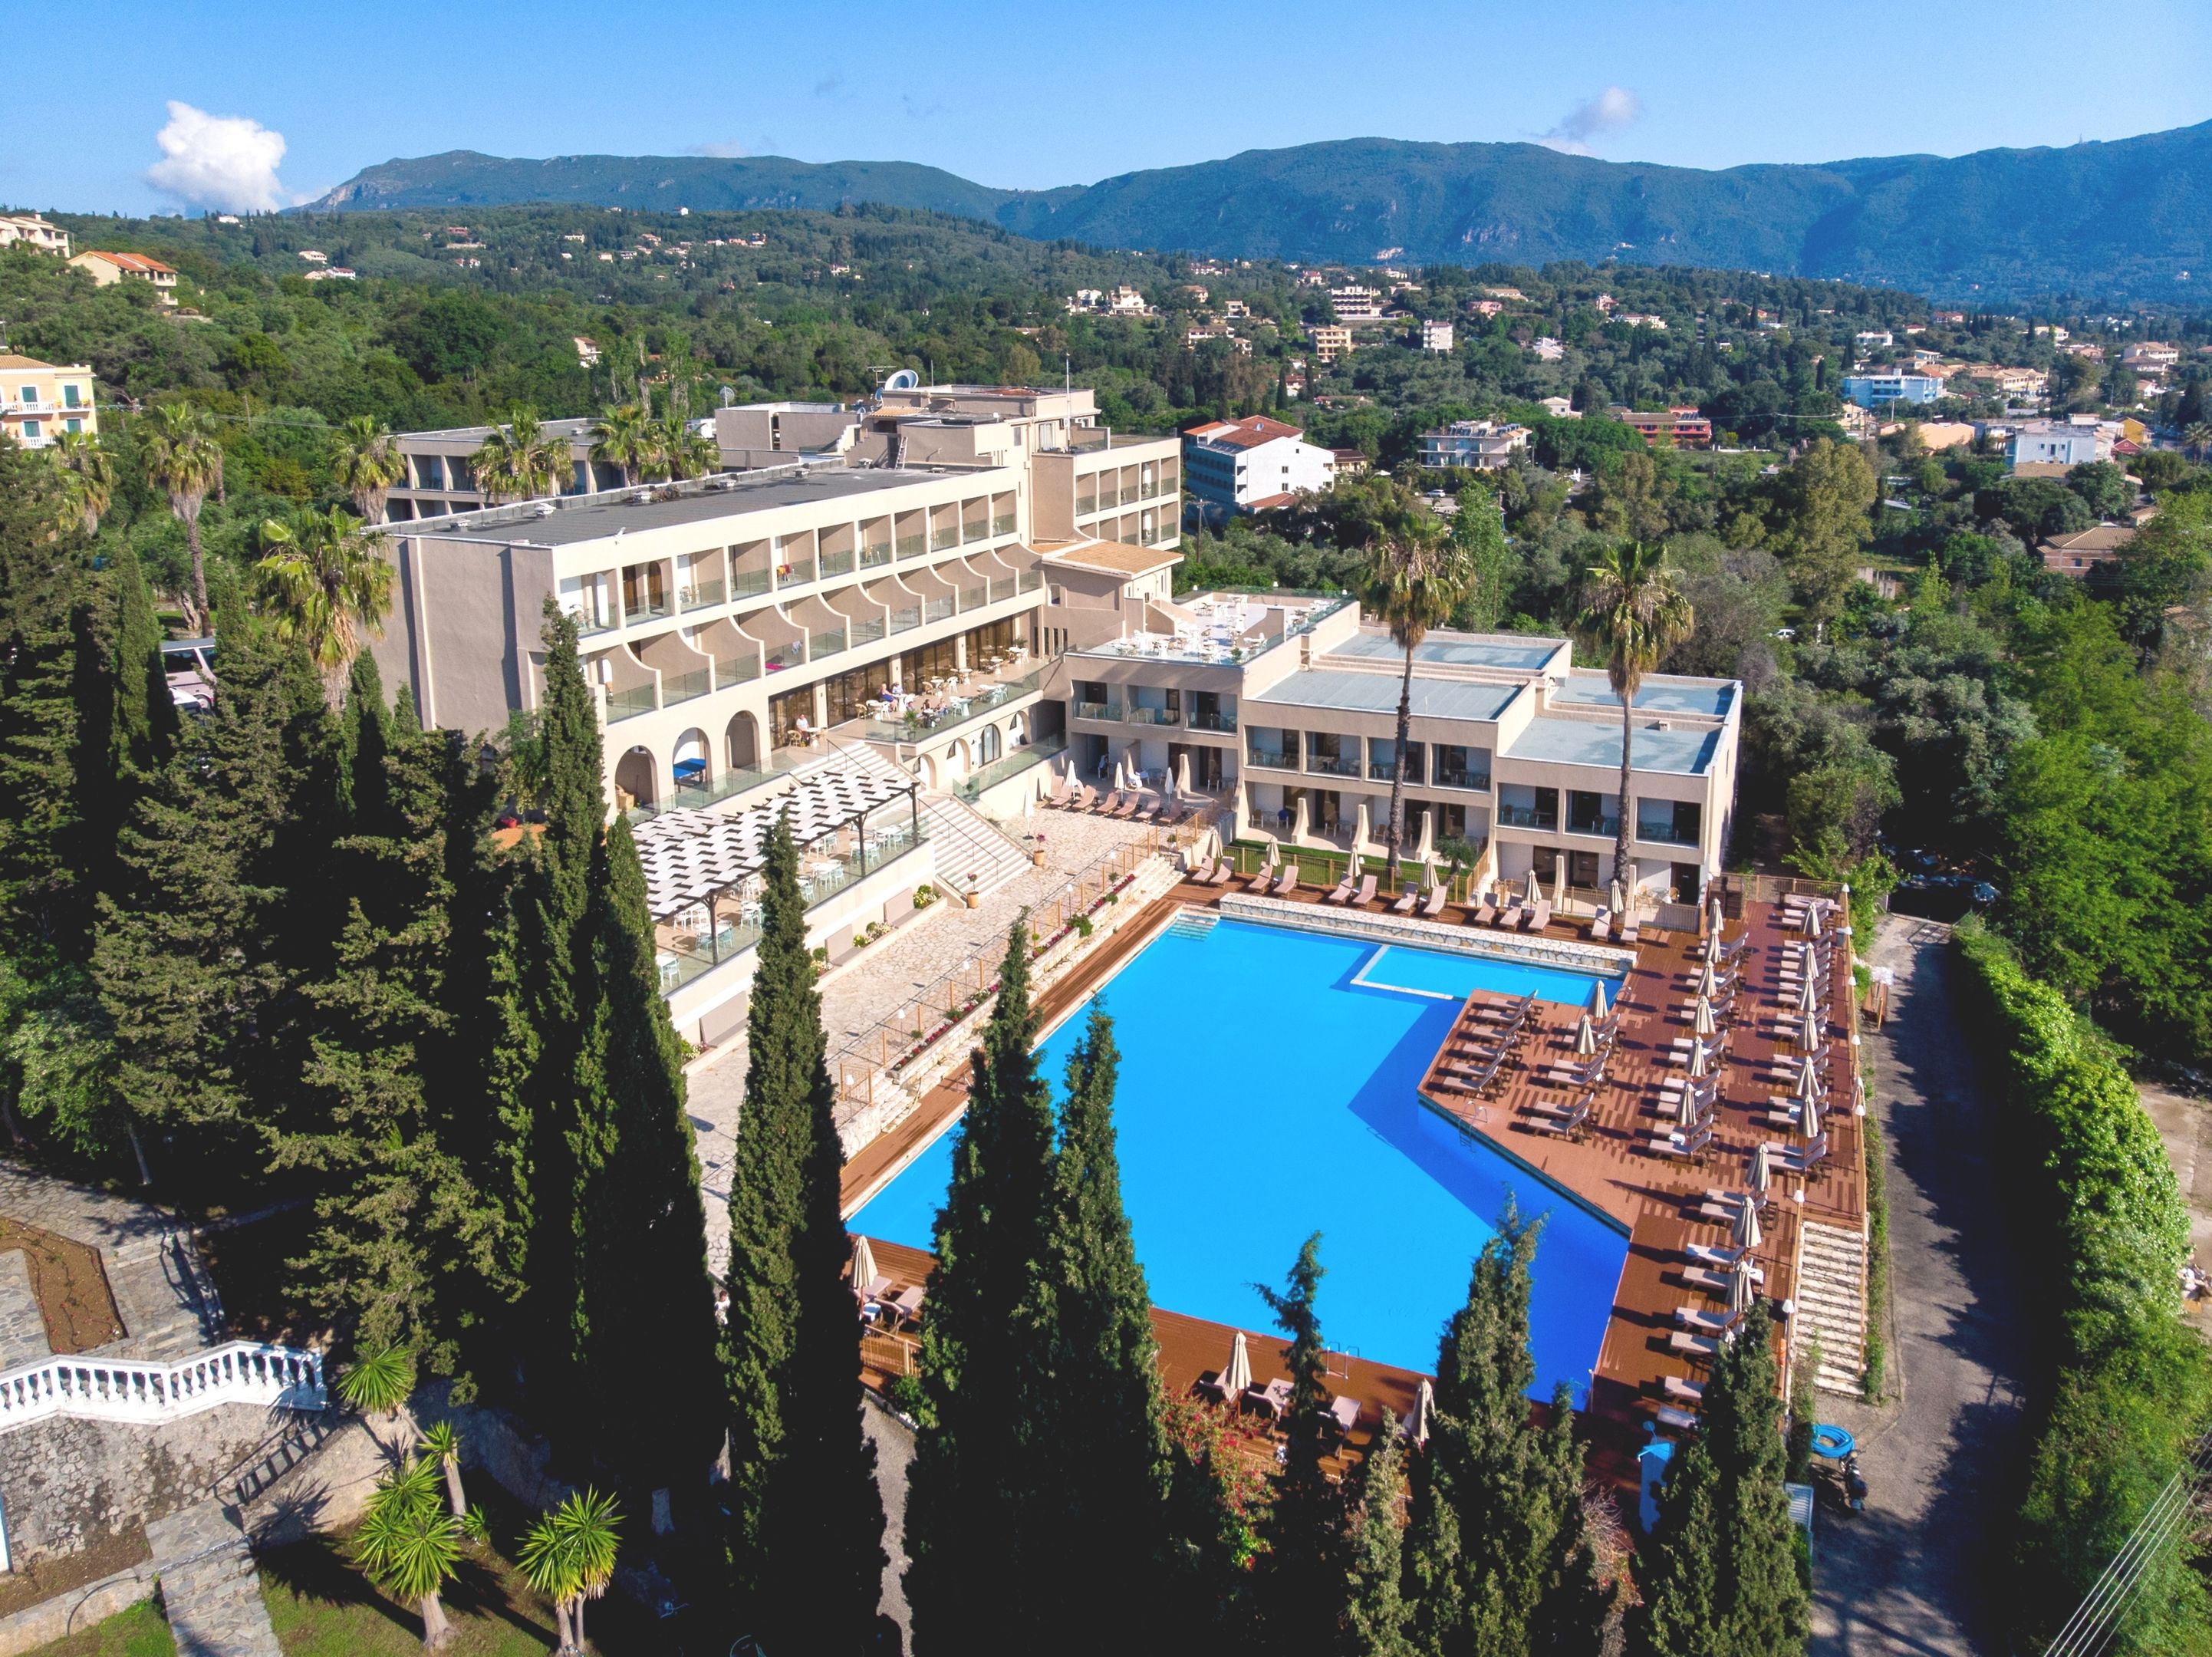 Magna Grecia Hotel